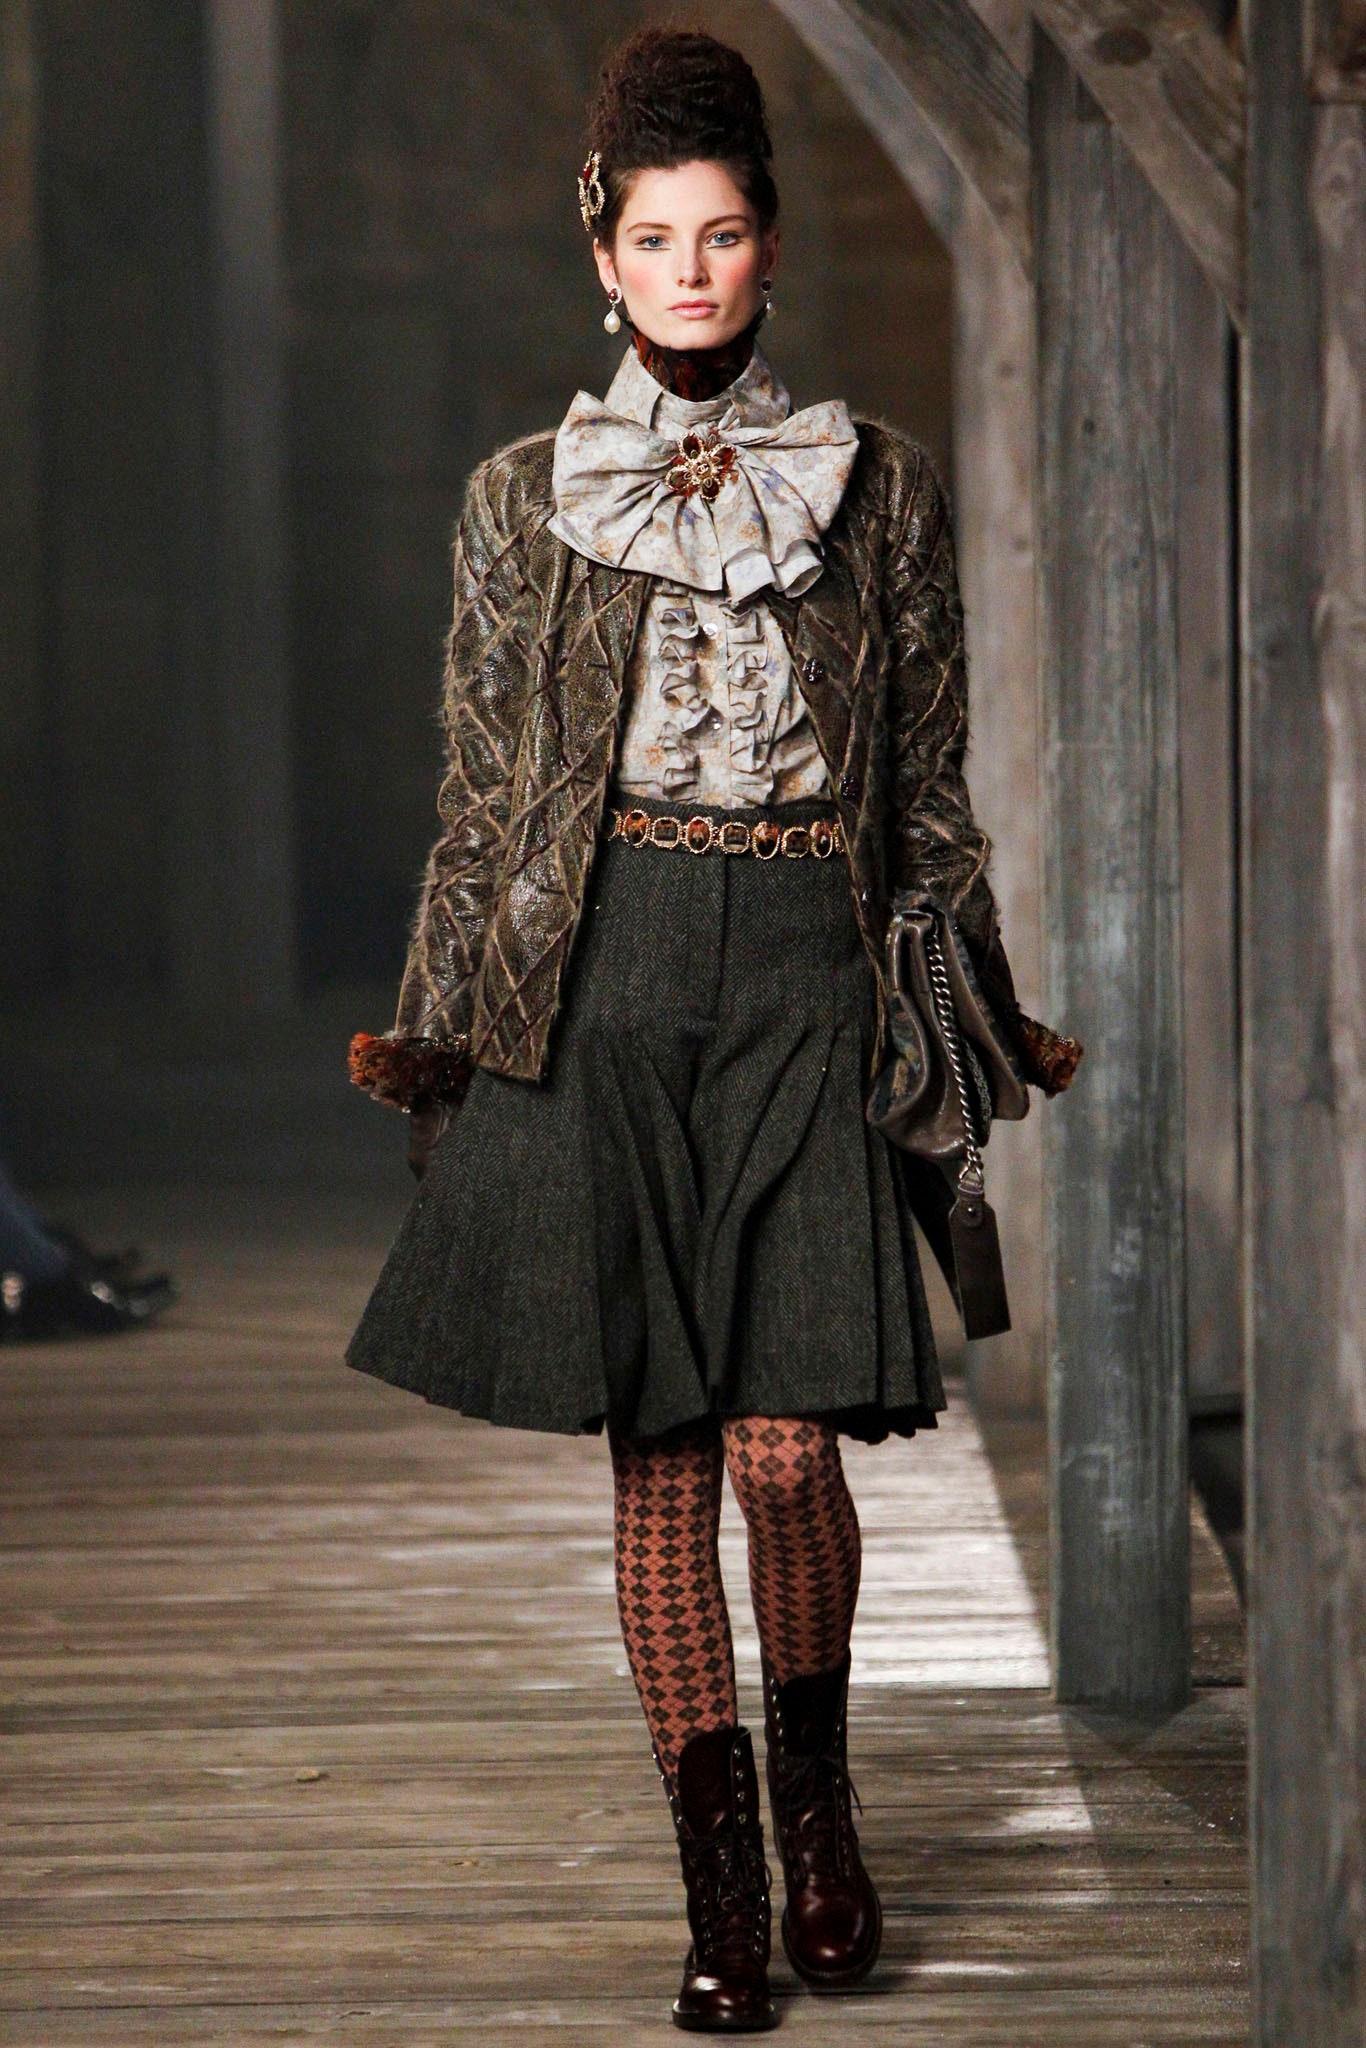 Ultime rareté Chanel veste en cuir marron fauve avec motifs matelassés en tweed -- de la Collection Runway of Paris / EDINBURGH, 2013 Metiers d'Art. 
Prix boutique supérieur à 12 000$. Prix sur ebay 9,999$
- CC bijou Boutons Jewell
- doublure en